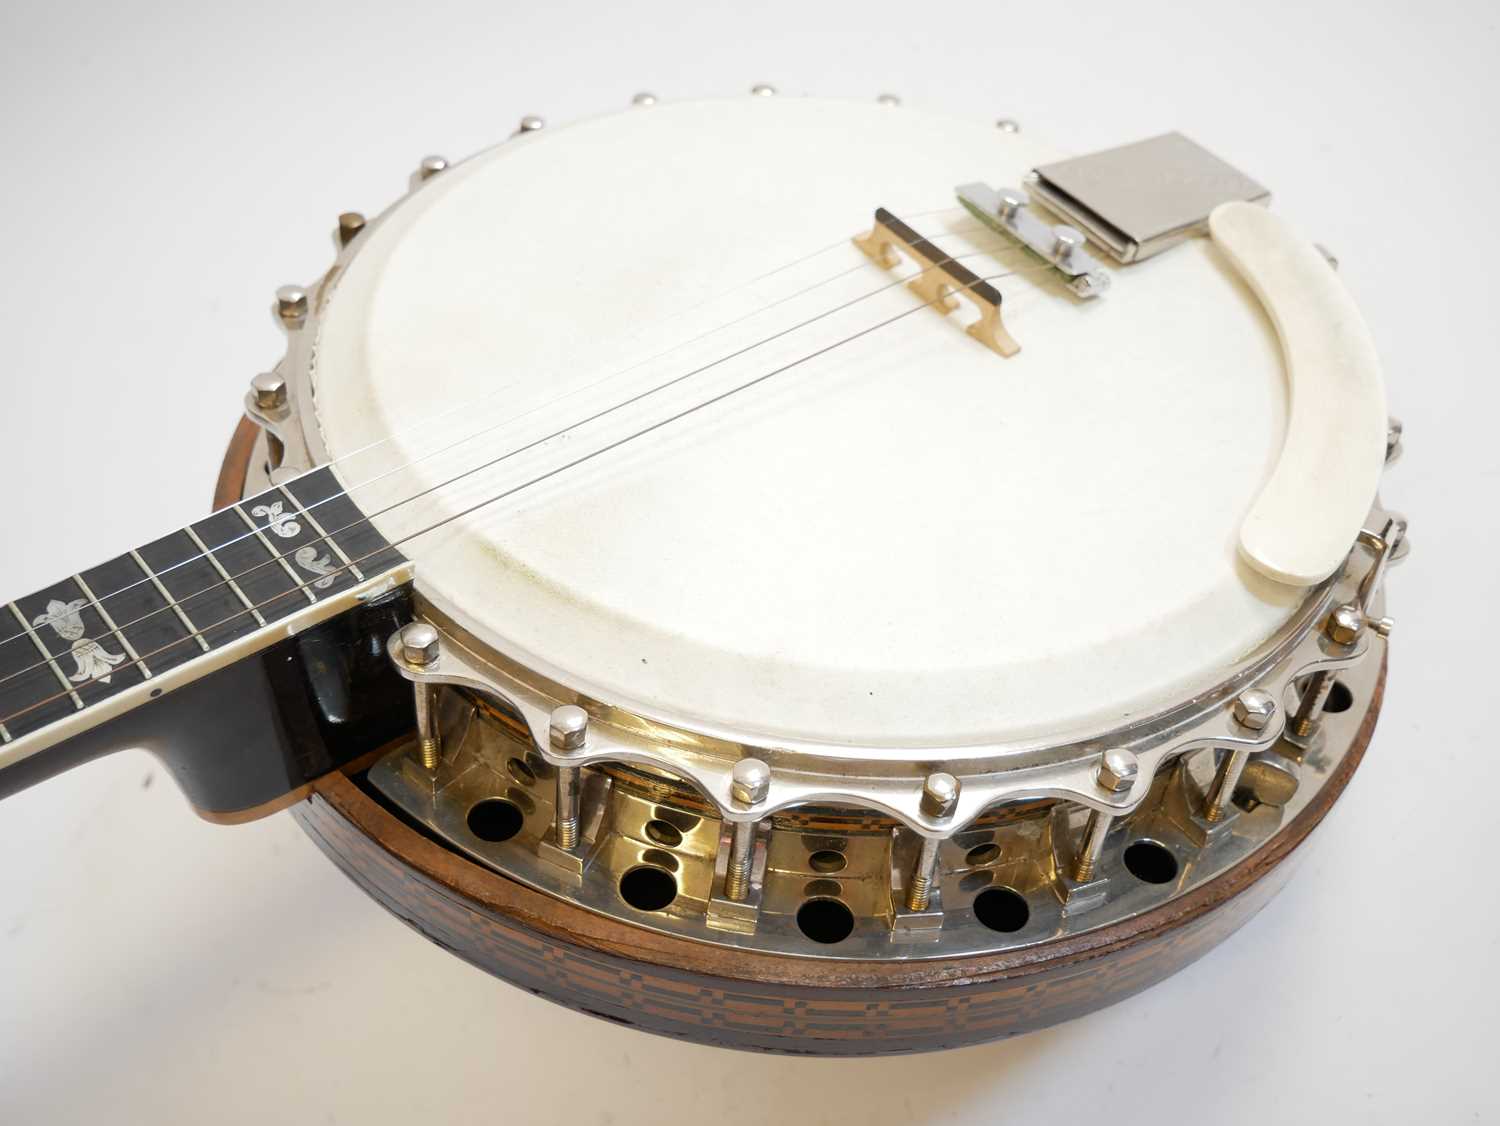 Clifford Essex paragon tenor banjo, - Image 7 of 22